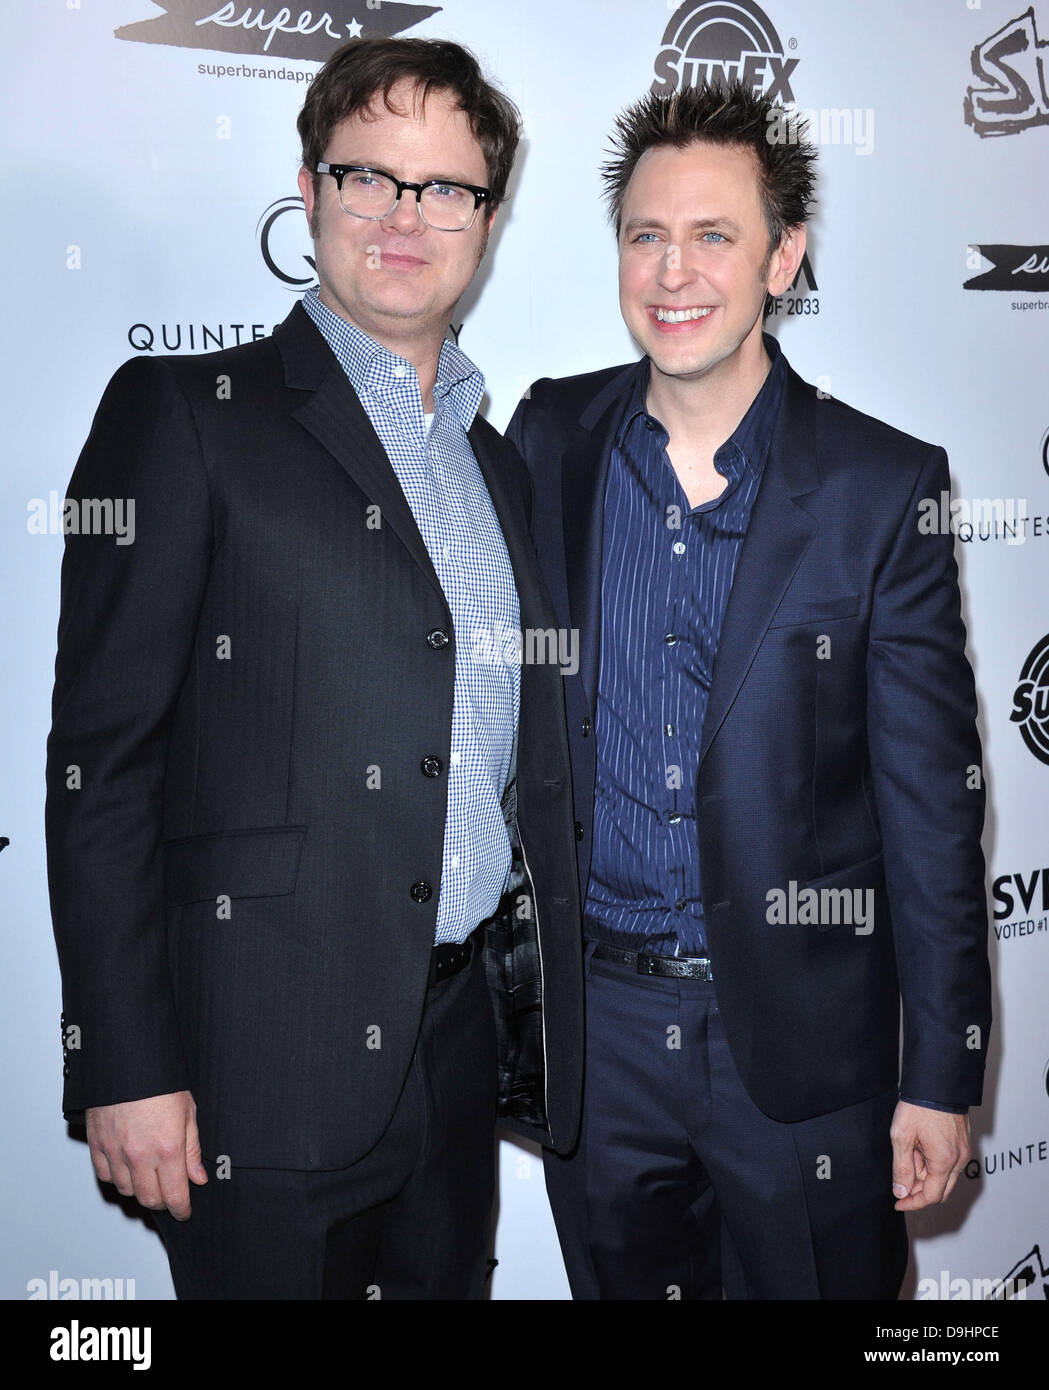 Rainn Wilson und James Gunn Los Angeles-premiere von "Super" statt im ägyptischen Theater - Ankünfte Los Angeles, Kalifornien - 21.03.11 Stockfoto